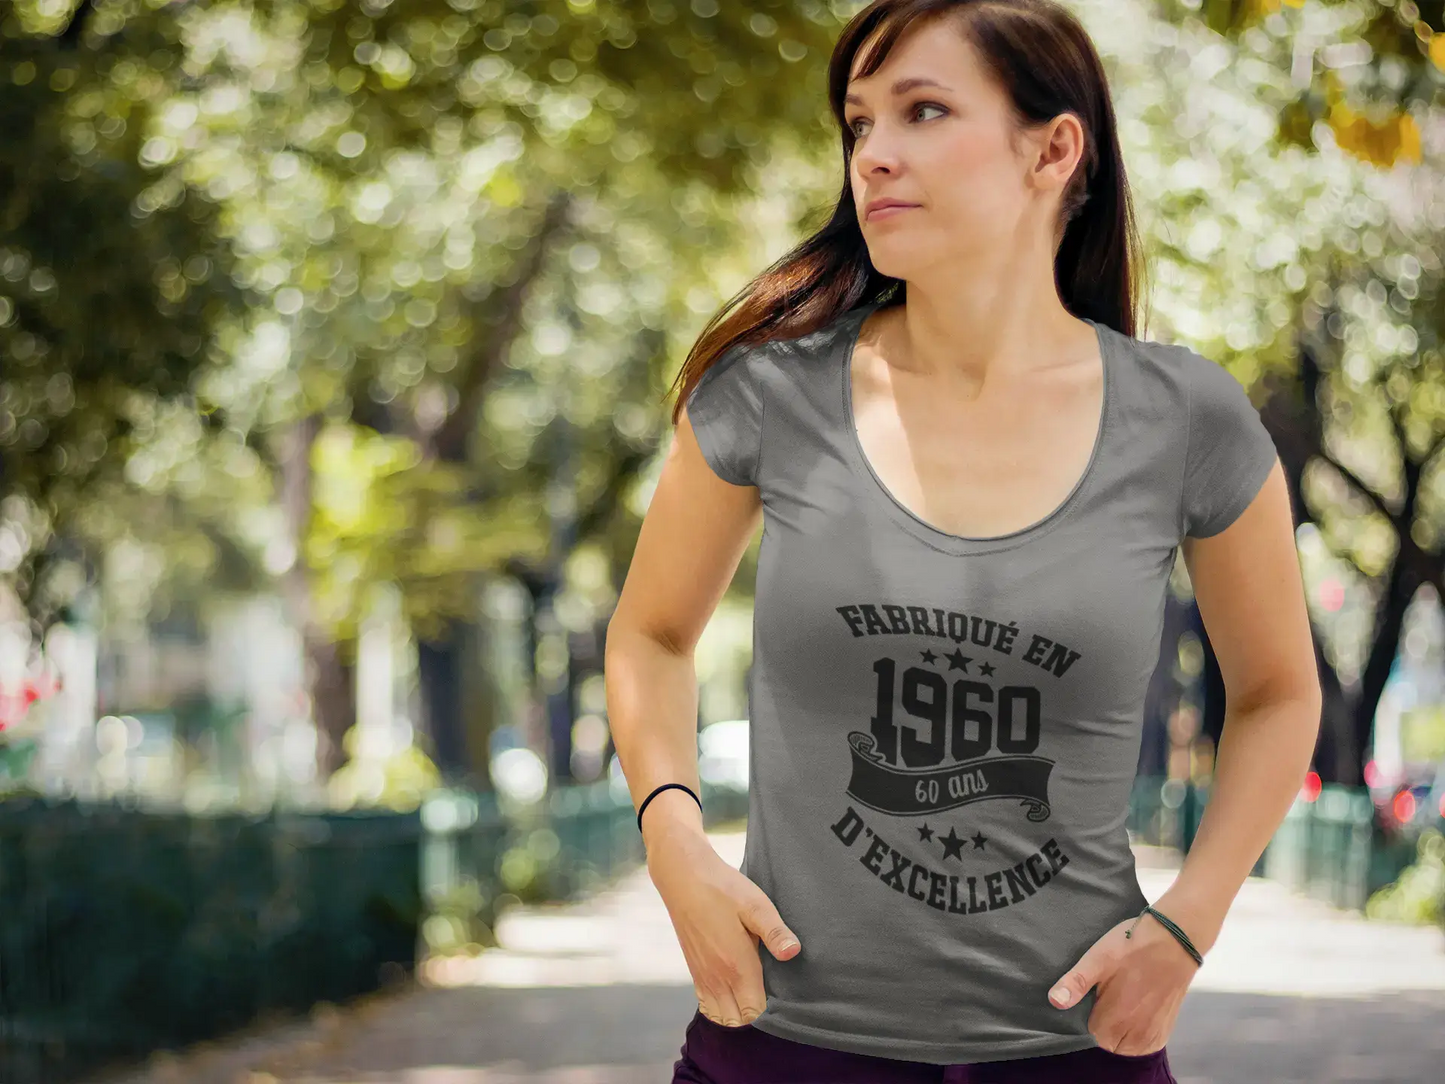 Ultrabasic - Tee-Shirt Femme Manches Courtes Fabriqué en 1960, 60 Ans d'être Génial T-Shirt